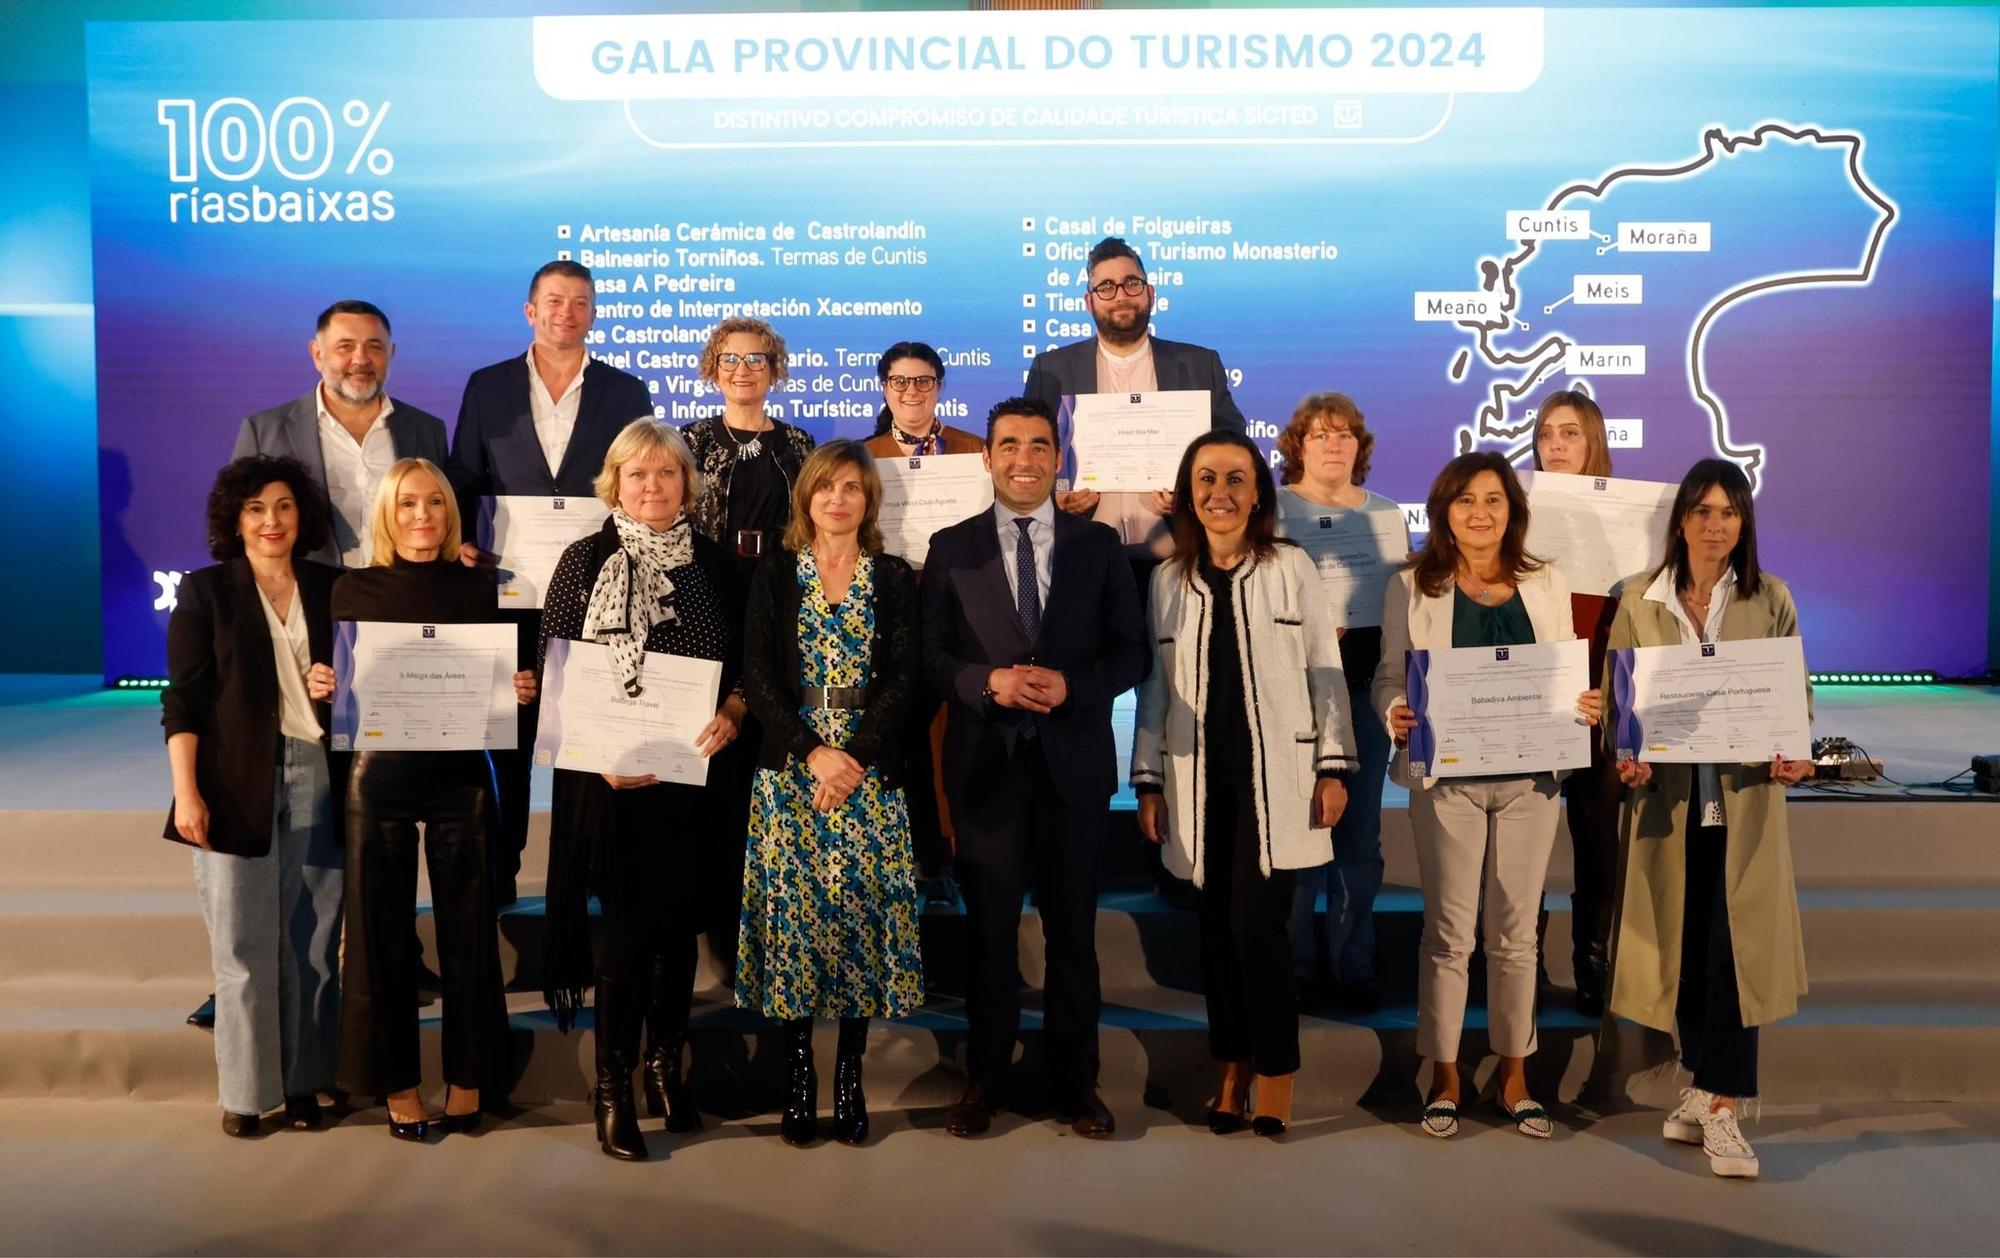 La Gala Provincial do Turismo distinguó a 200 entidades que alcanzan los indicadores de calidad